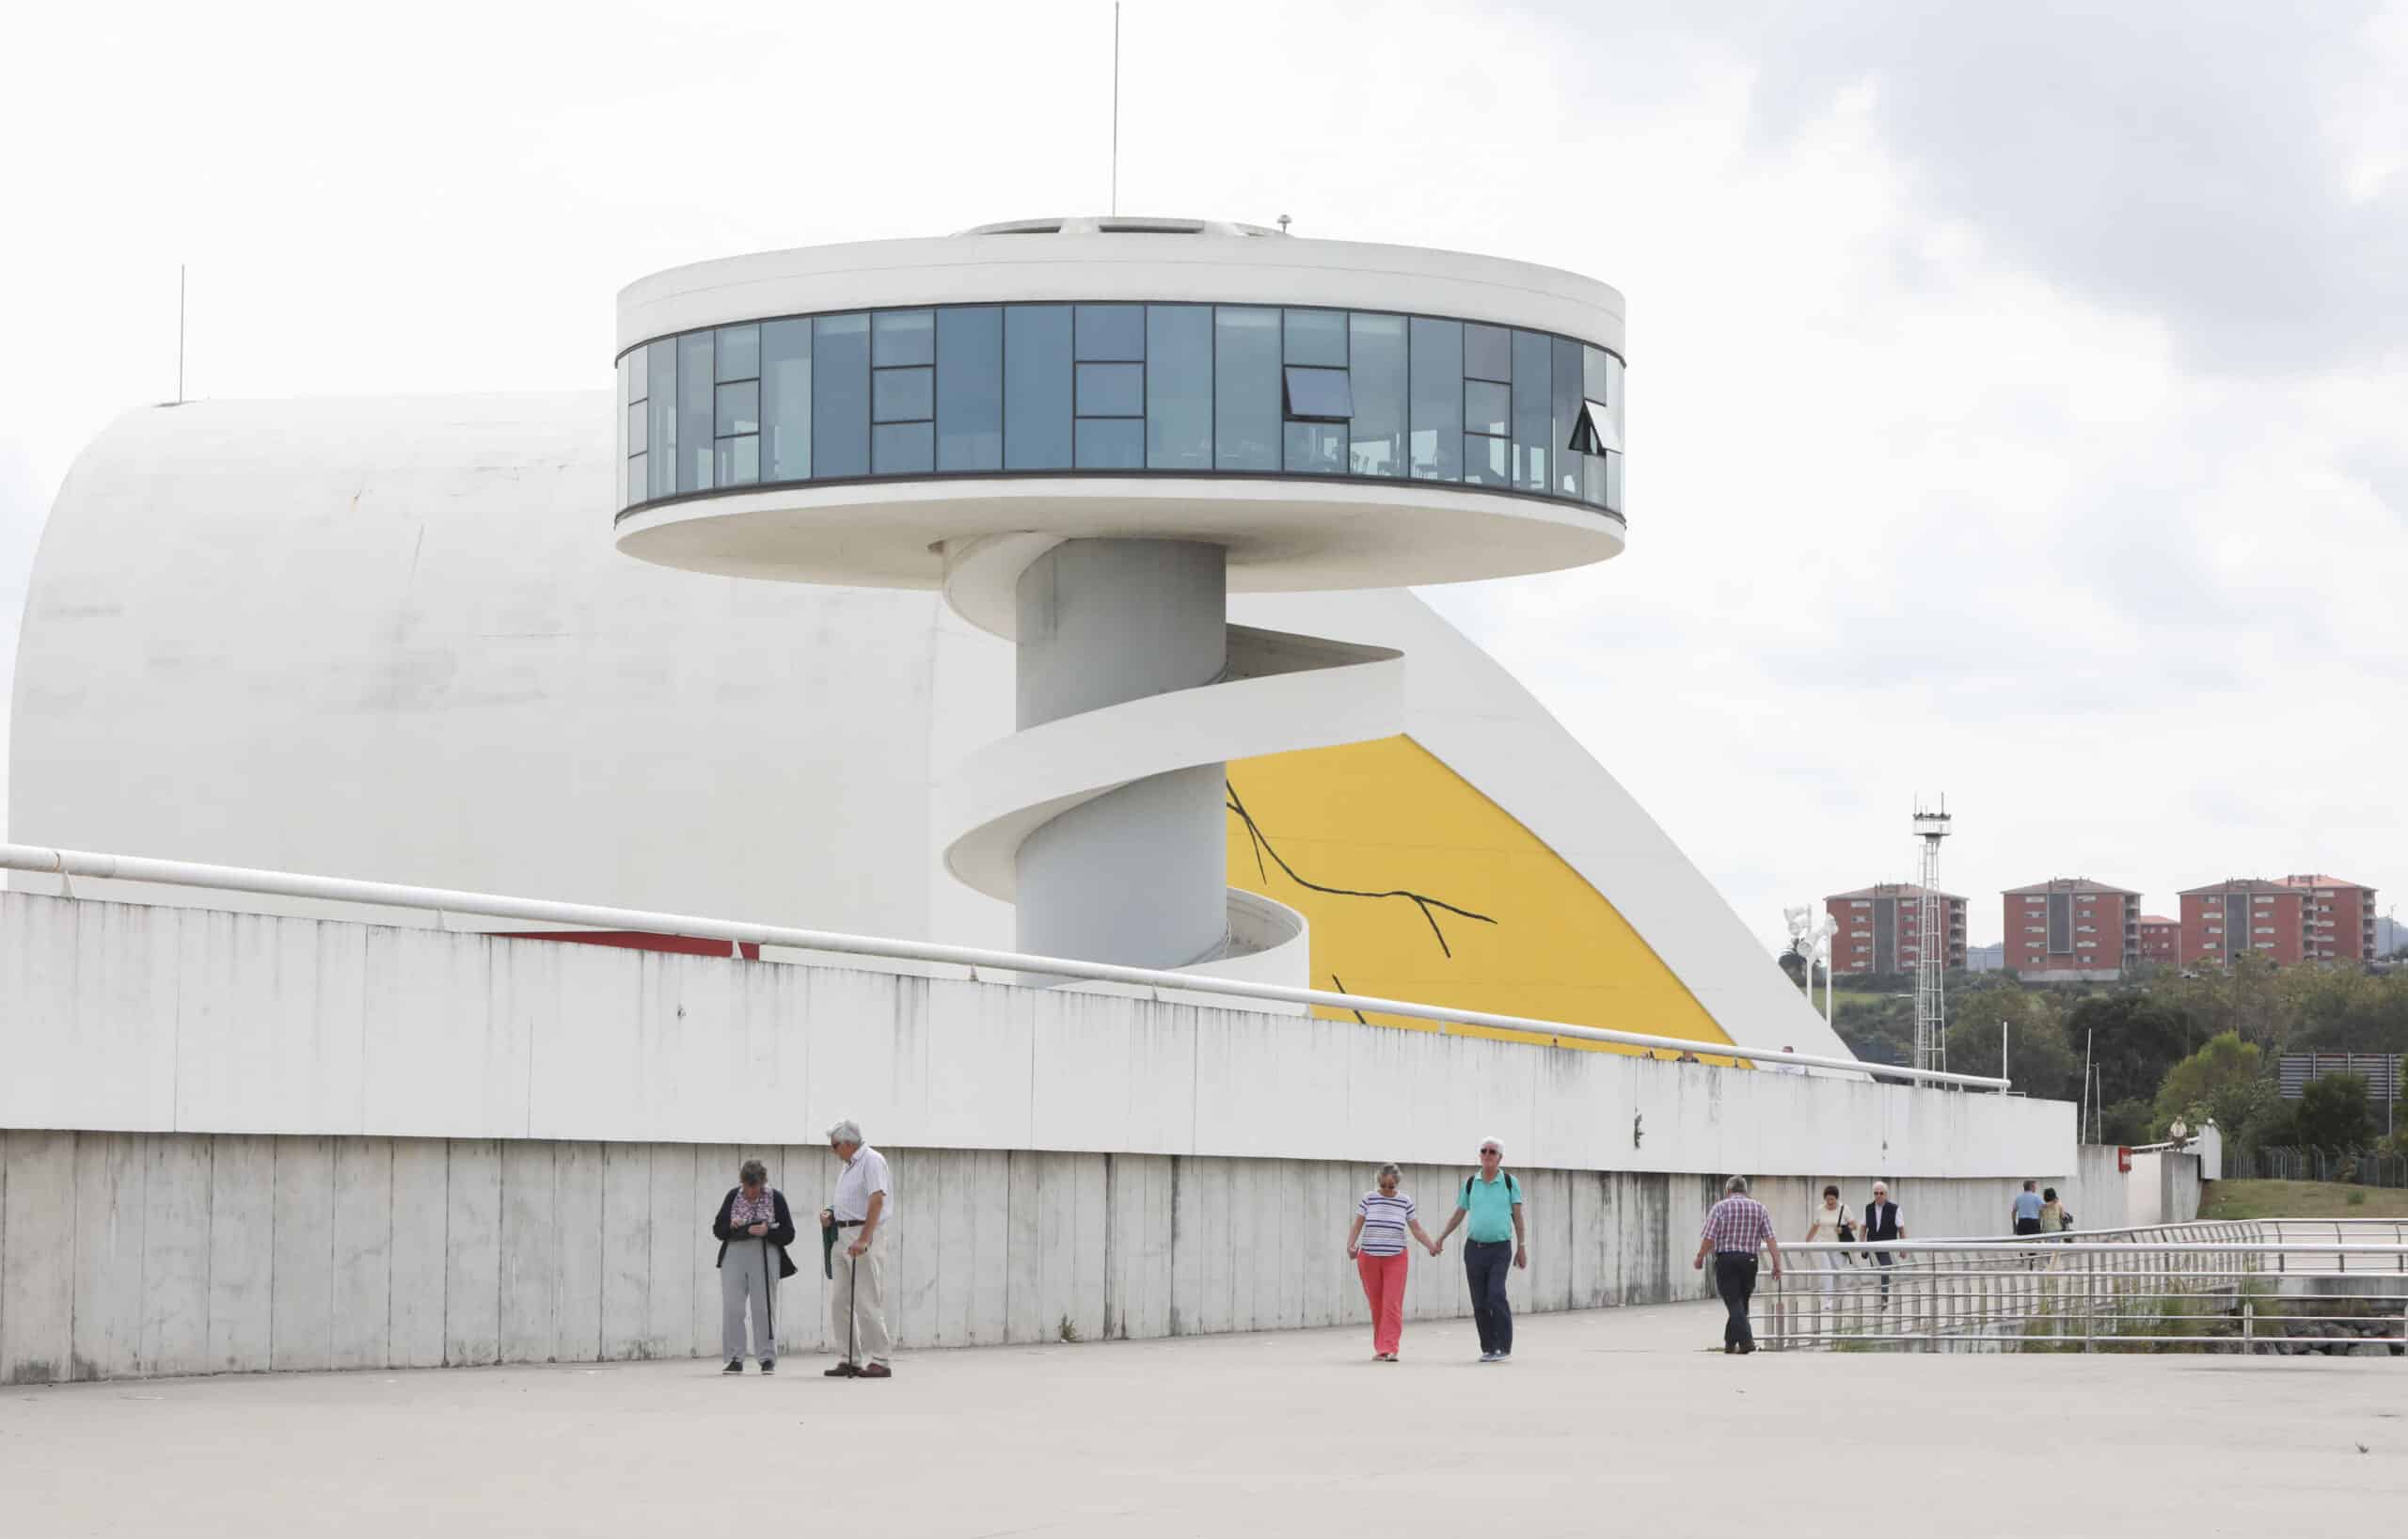 El Centro Niemeyer licita el restaurante de su Torre-Mirador tras seis años cerrado